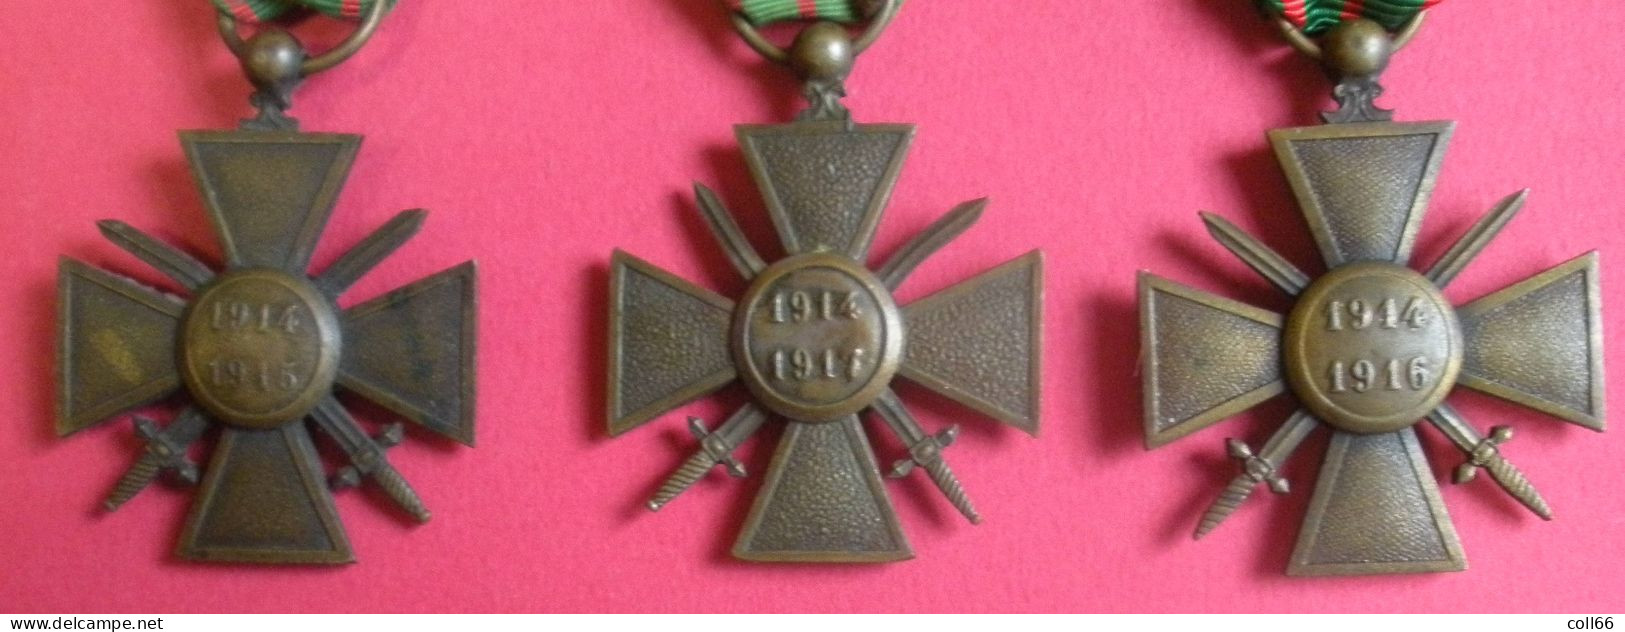 Ww1 Décorations Médailles 3 Croix De Guerre Avec Distinctions De Poilus 1914-1915 1914-1916 1914-1917 & Rubans - Francia